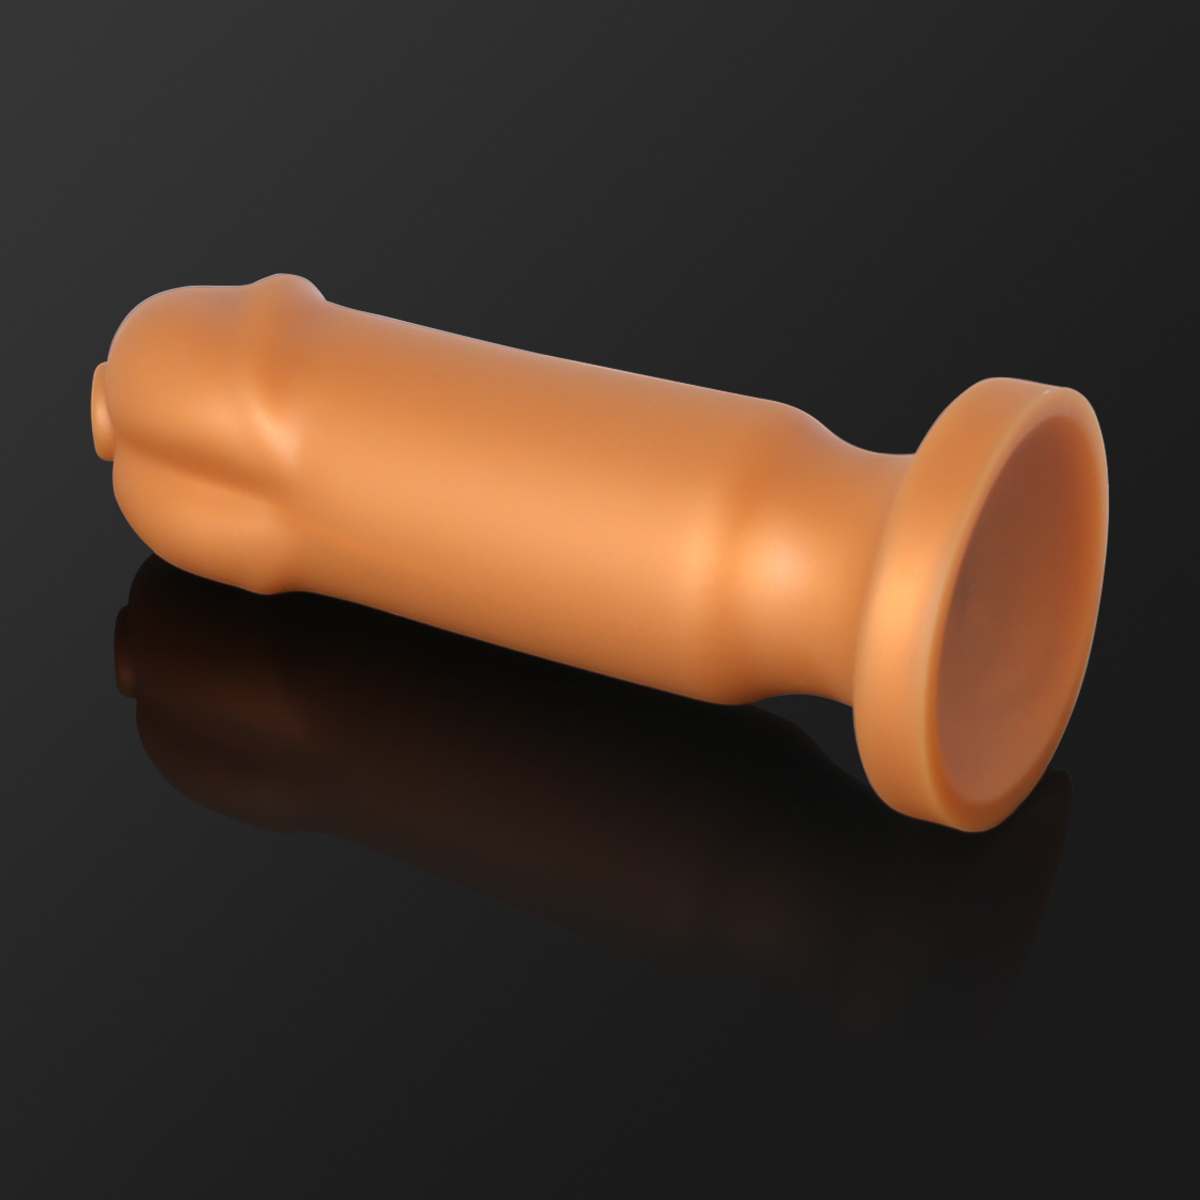 Enorme Dildo Penis Silicone Penis Soft Dildo Feminino Penis Butt Plug Suction Cup Dildos para Mulheres Lésbicas Brinquedos